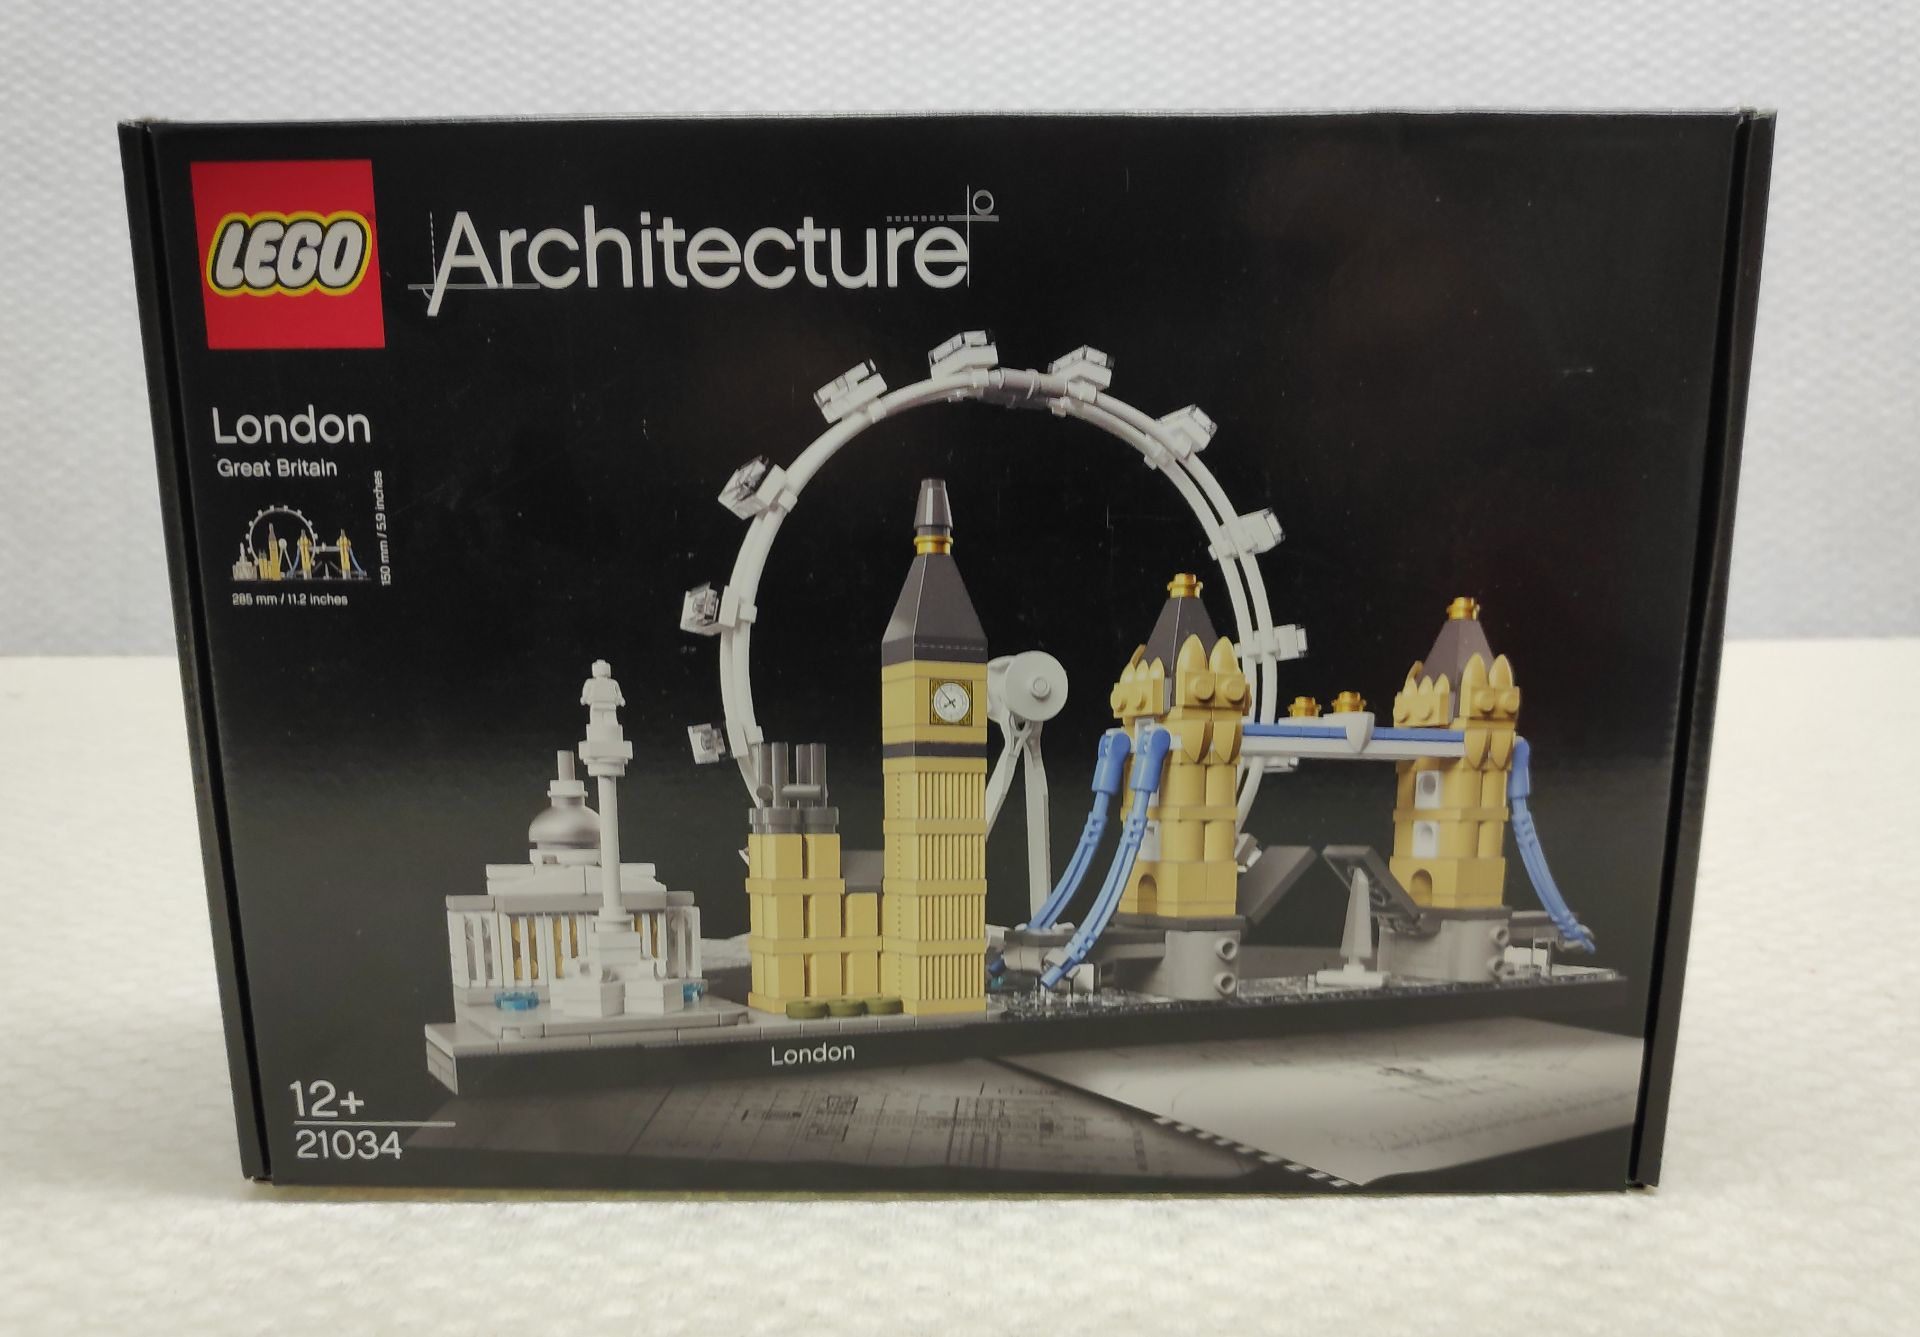 1 x Lego Architecture London Set - Set # 21034 - New/Boxed - Image 7 of 7